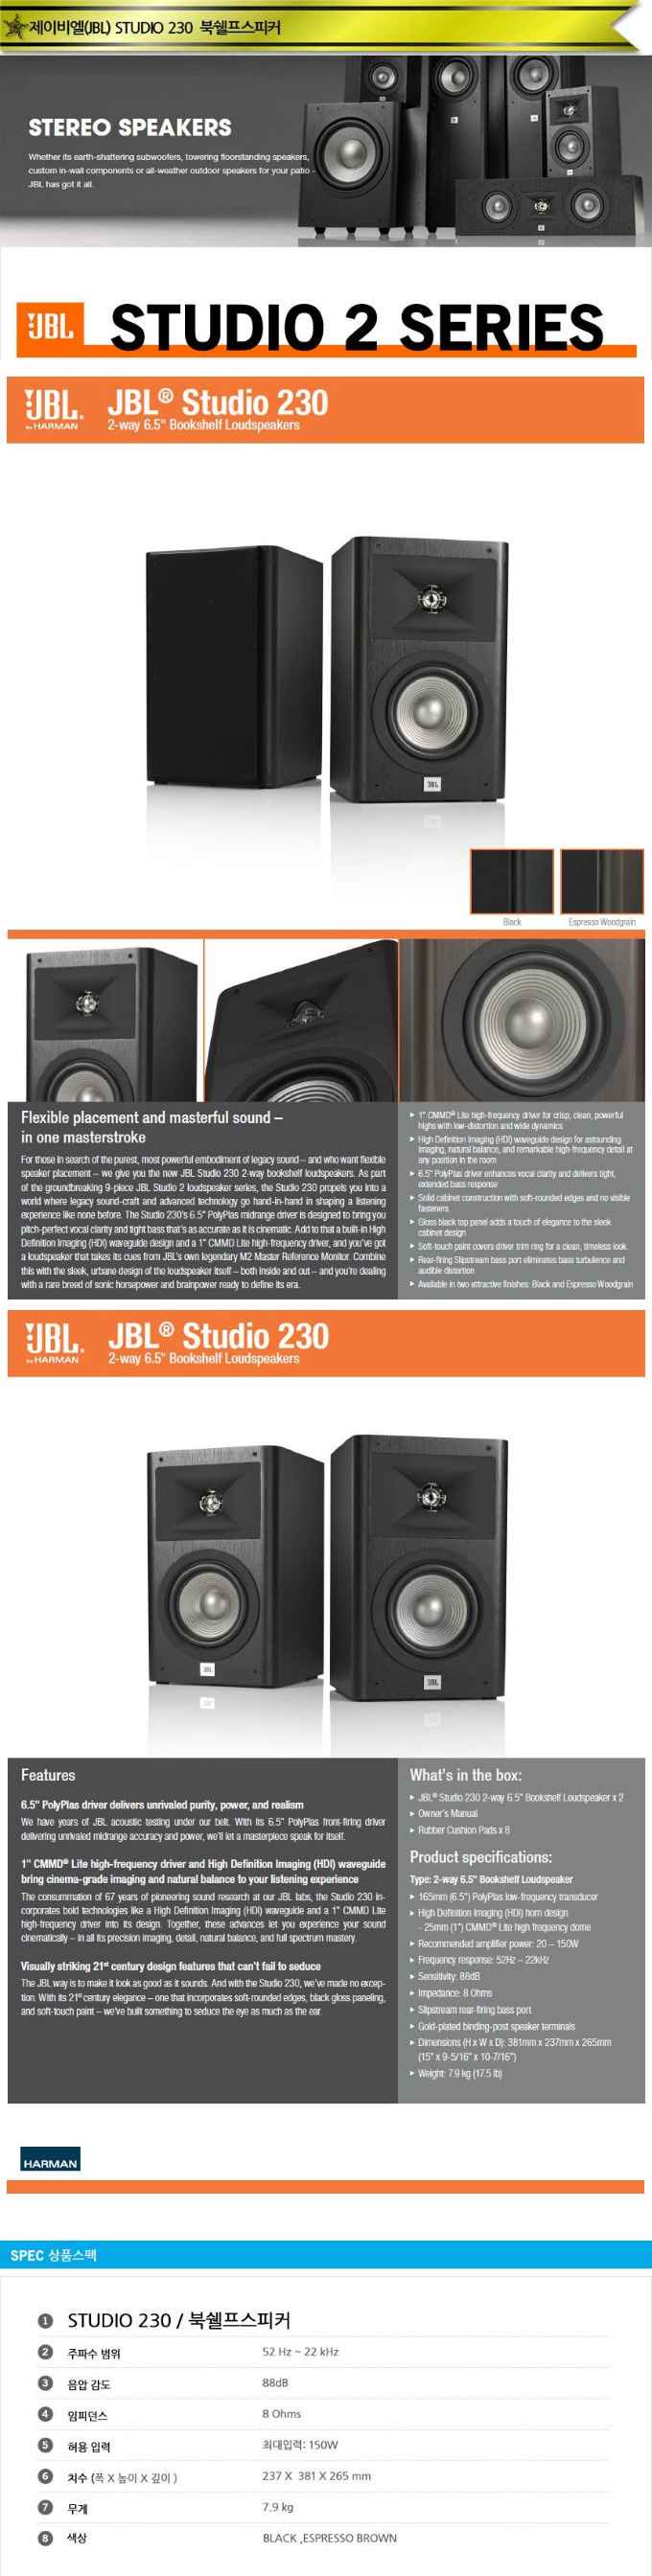 JBL Studio 230 MENU.jpg